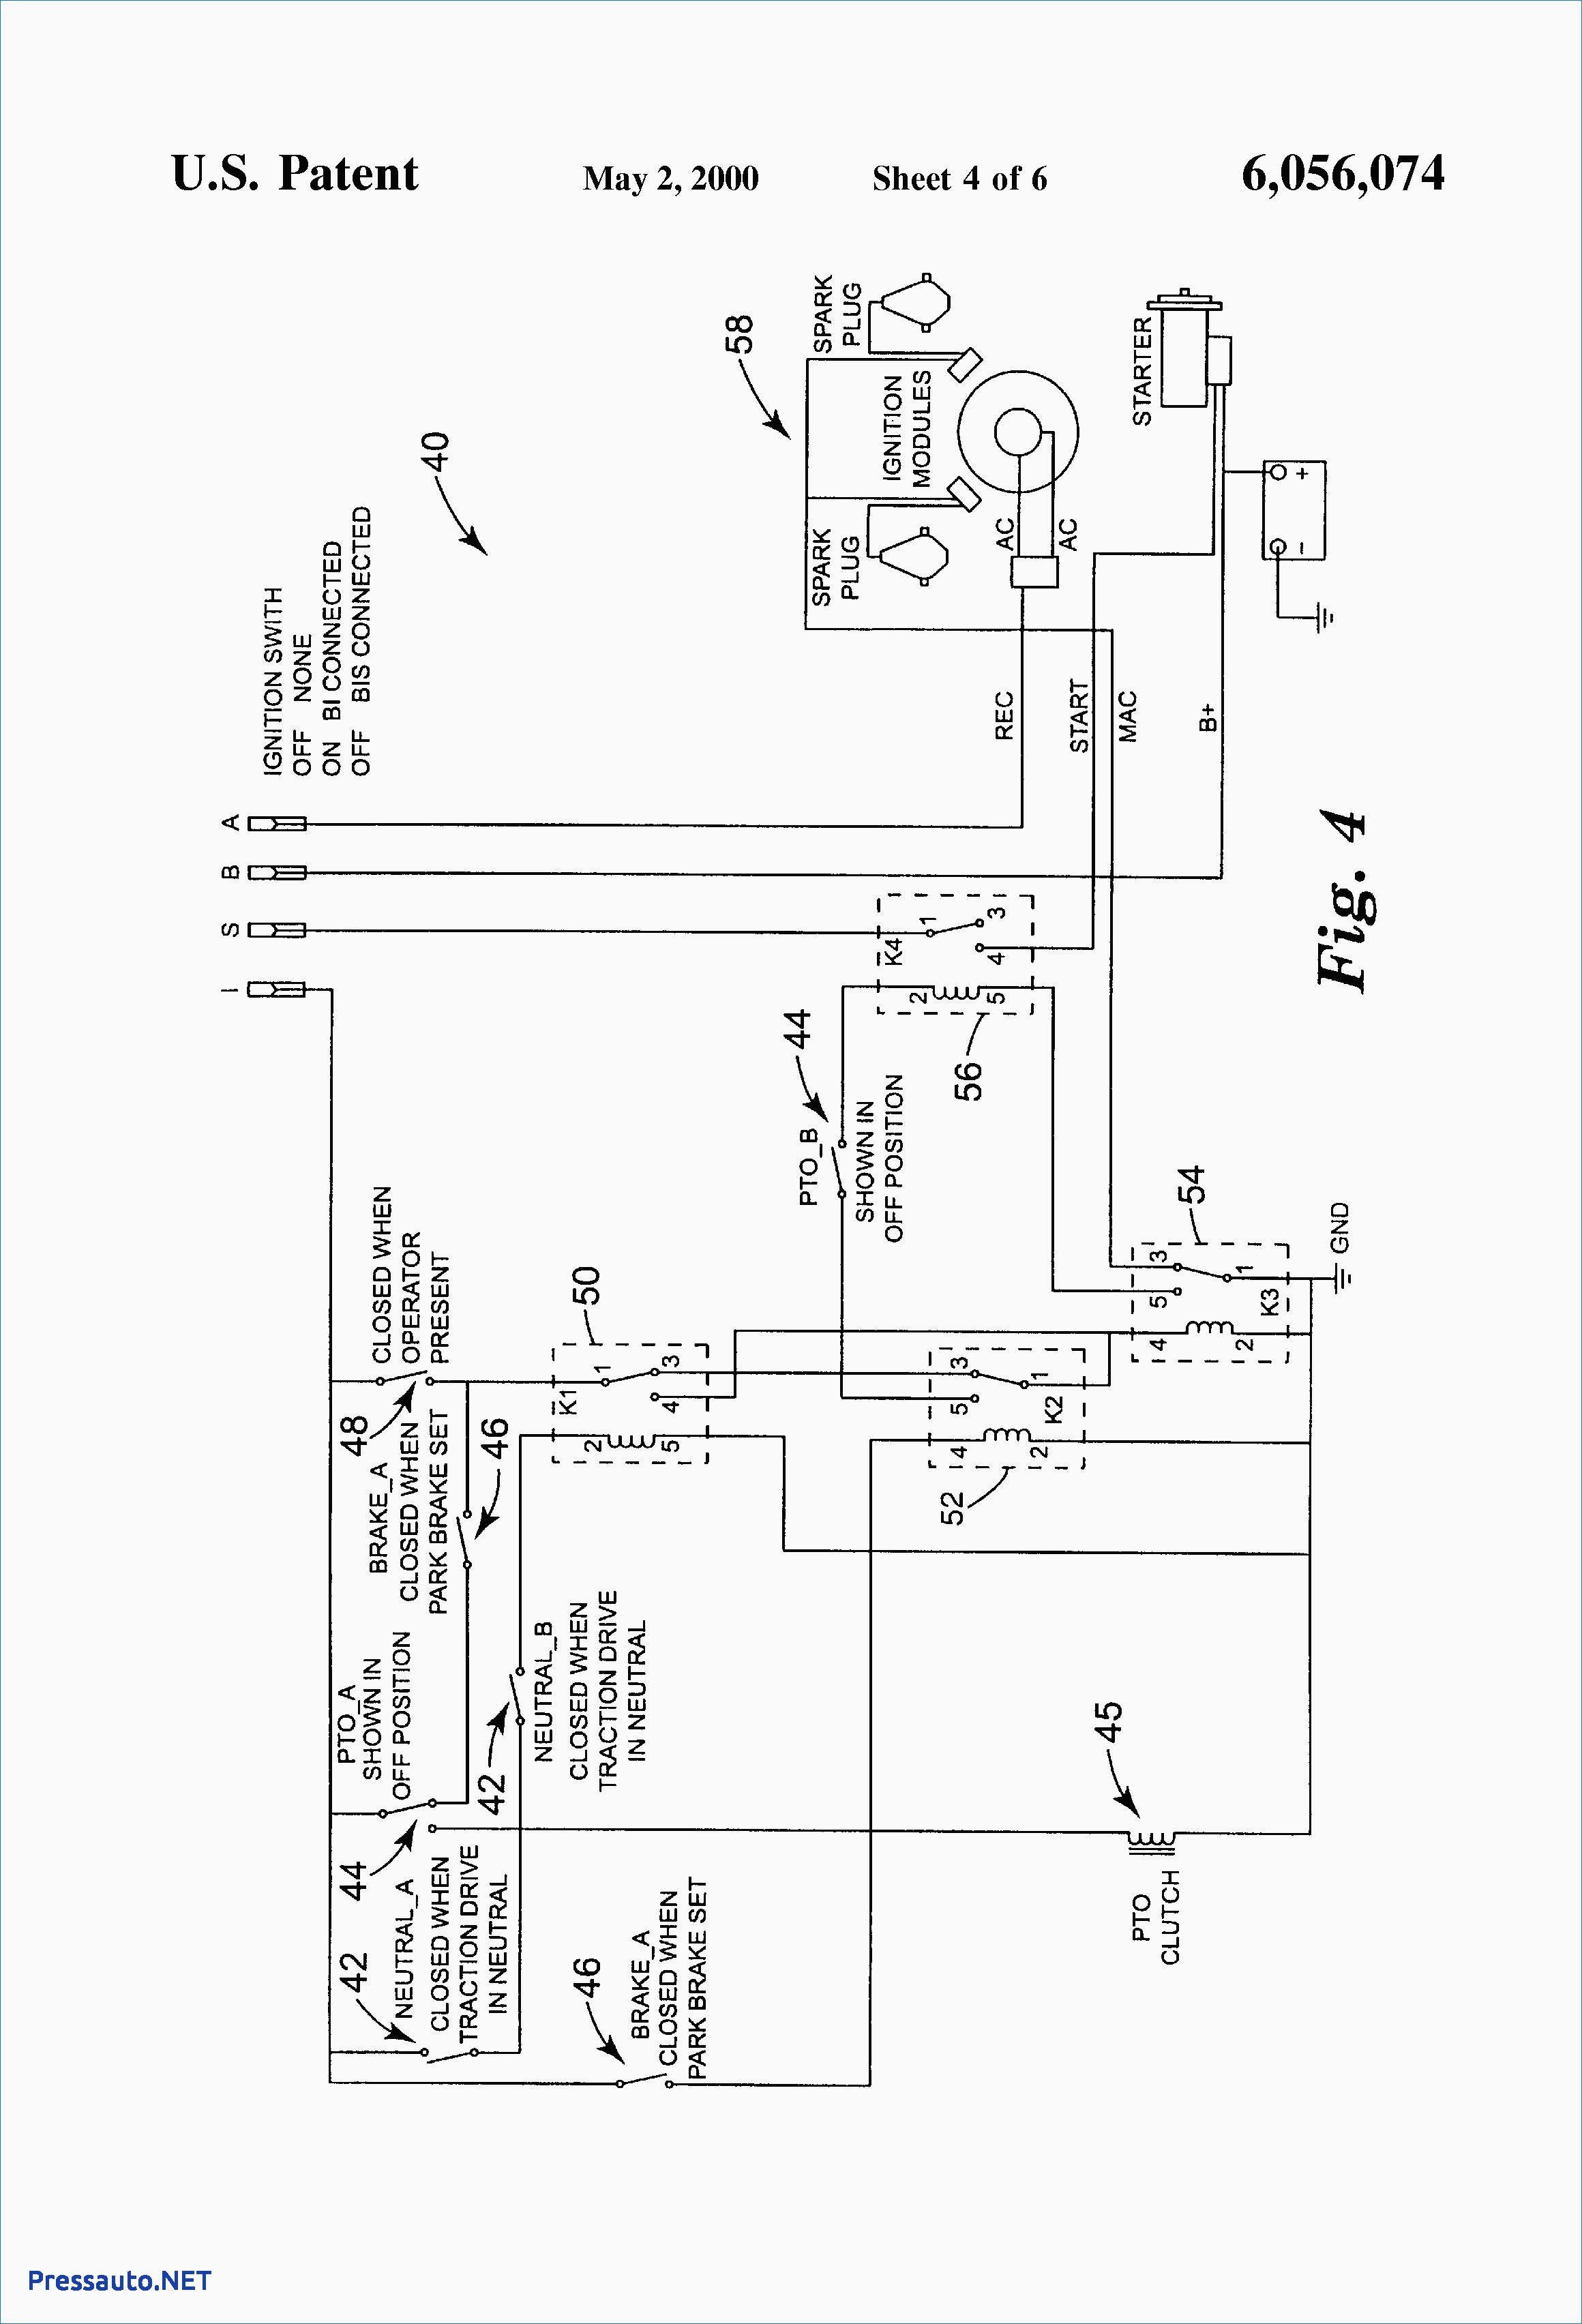 Wiring Diagram Toro Twister - Wiring Diagram Data - Briggs And Stratton Voltage Regulator Wiring Diagram